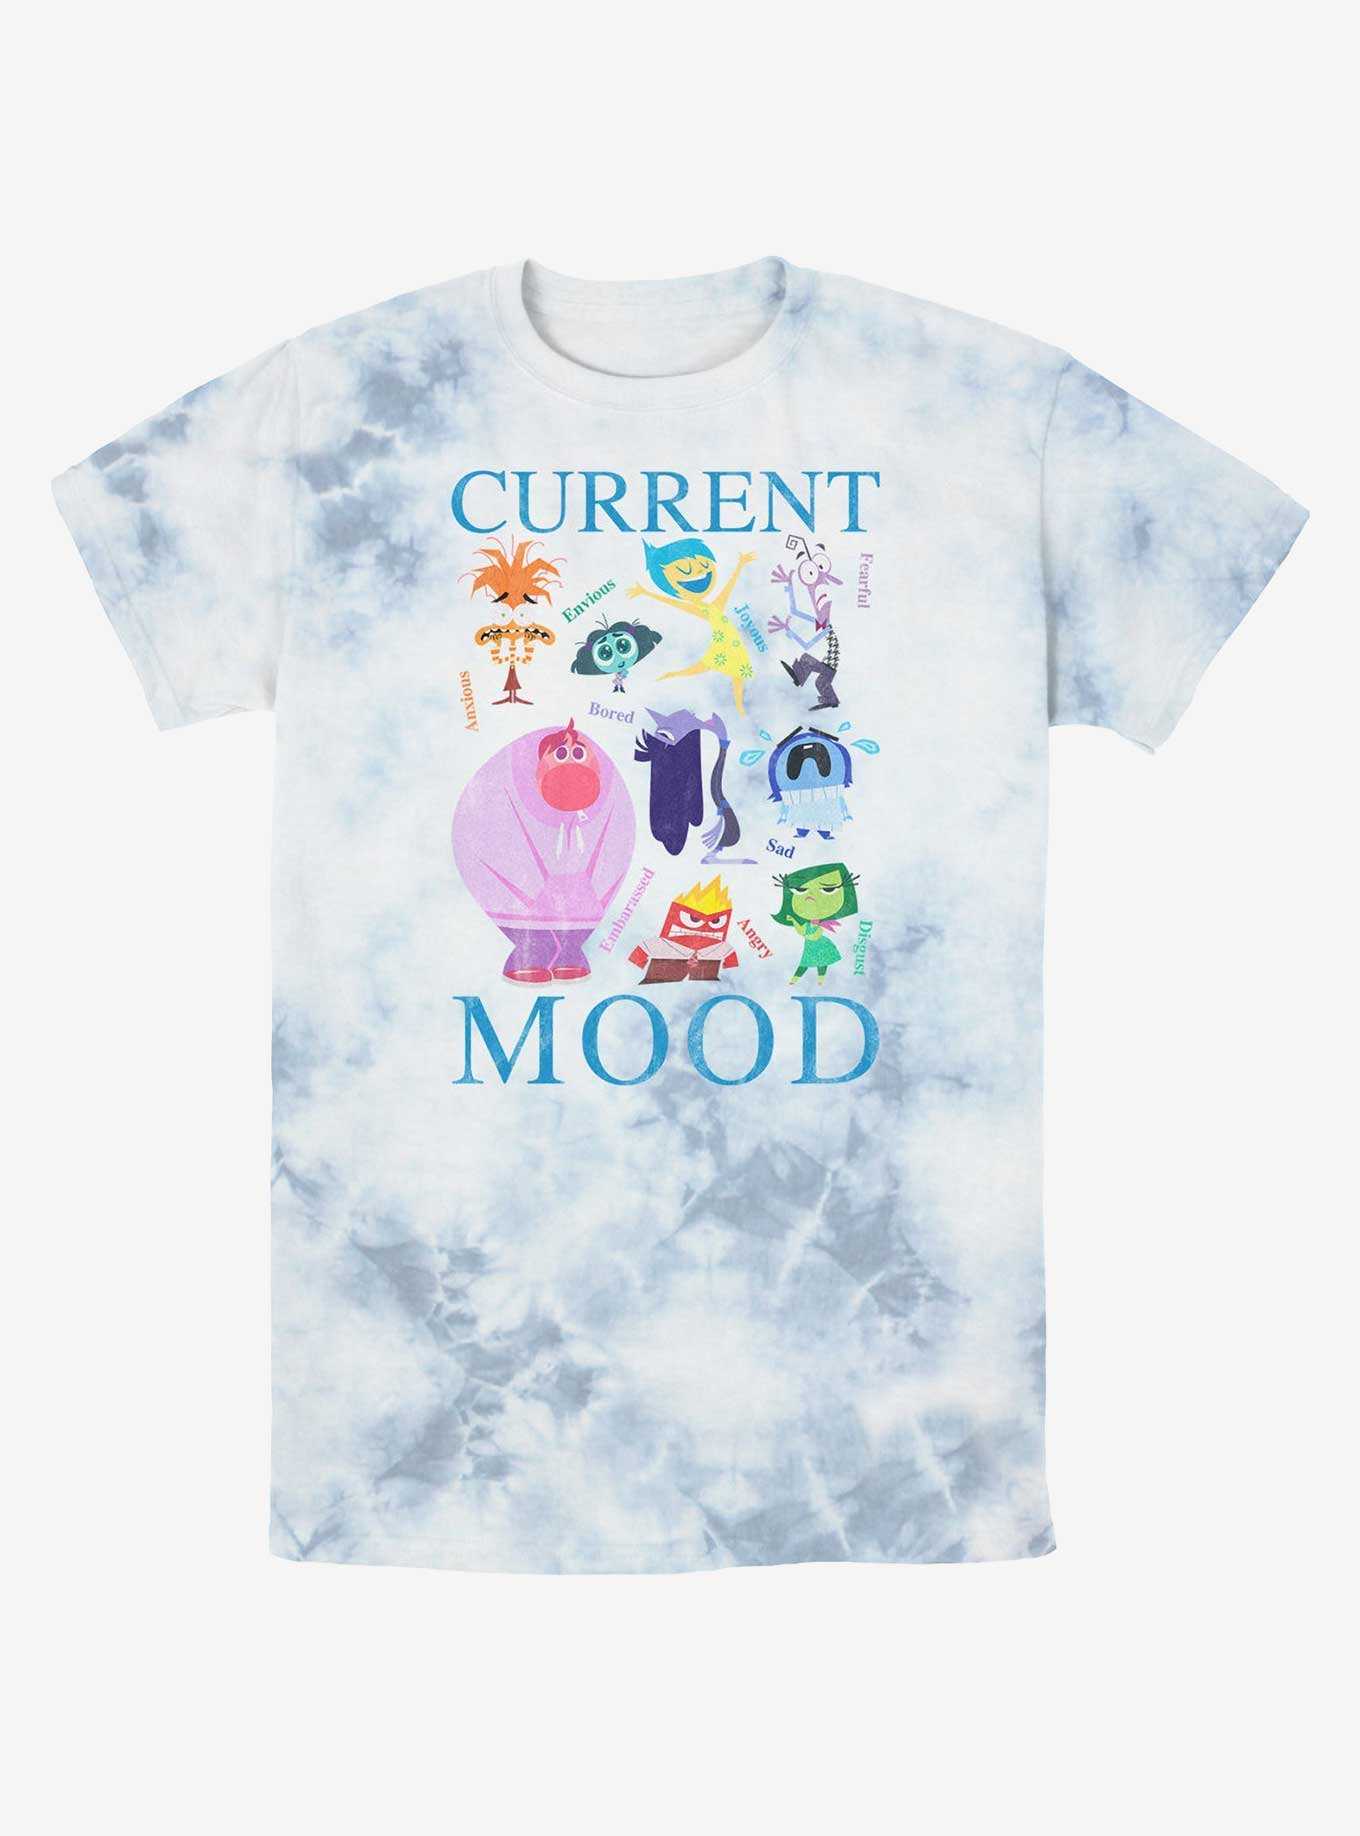 Disney Pixar Inside Out 2 Current Mood Tie-Dye T-Shirt, , hi-res